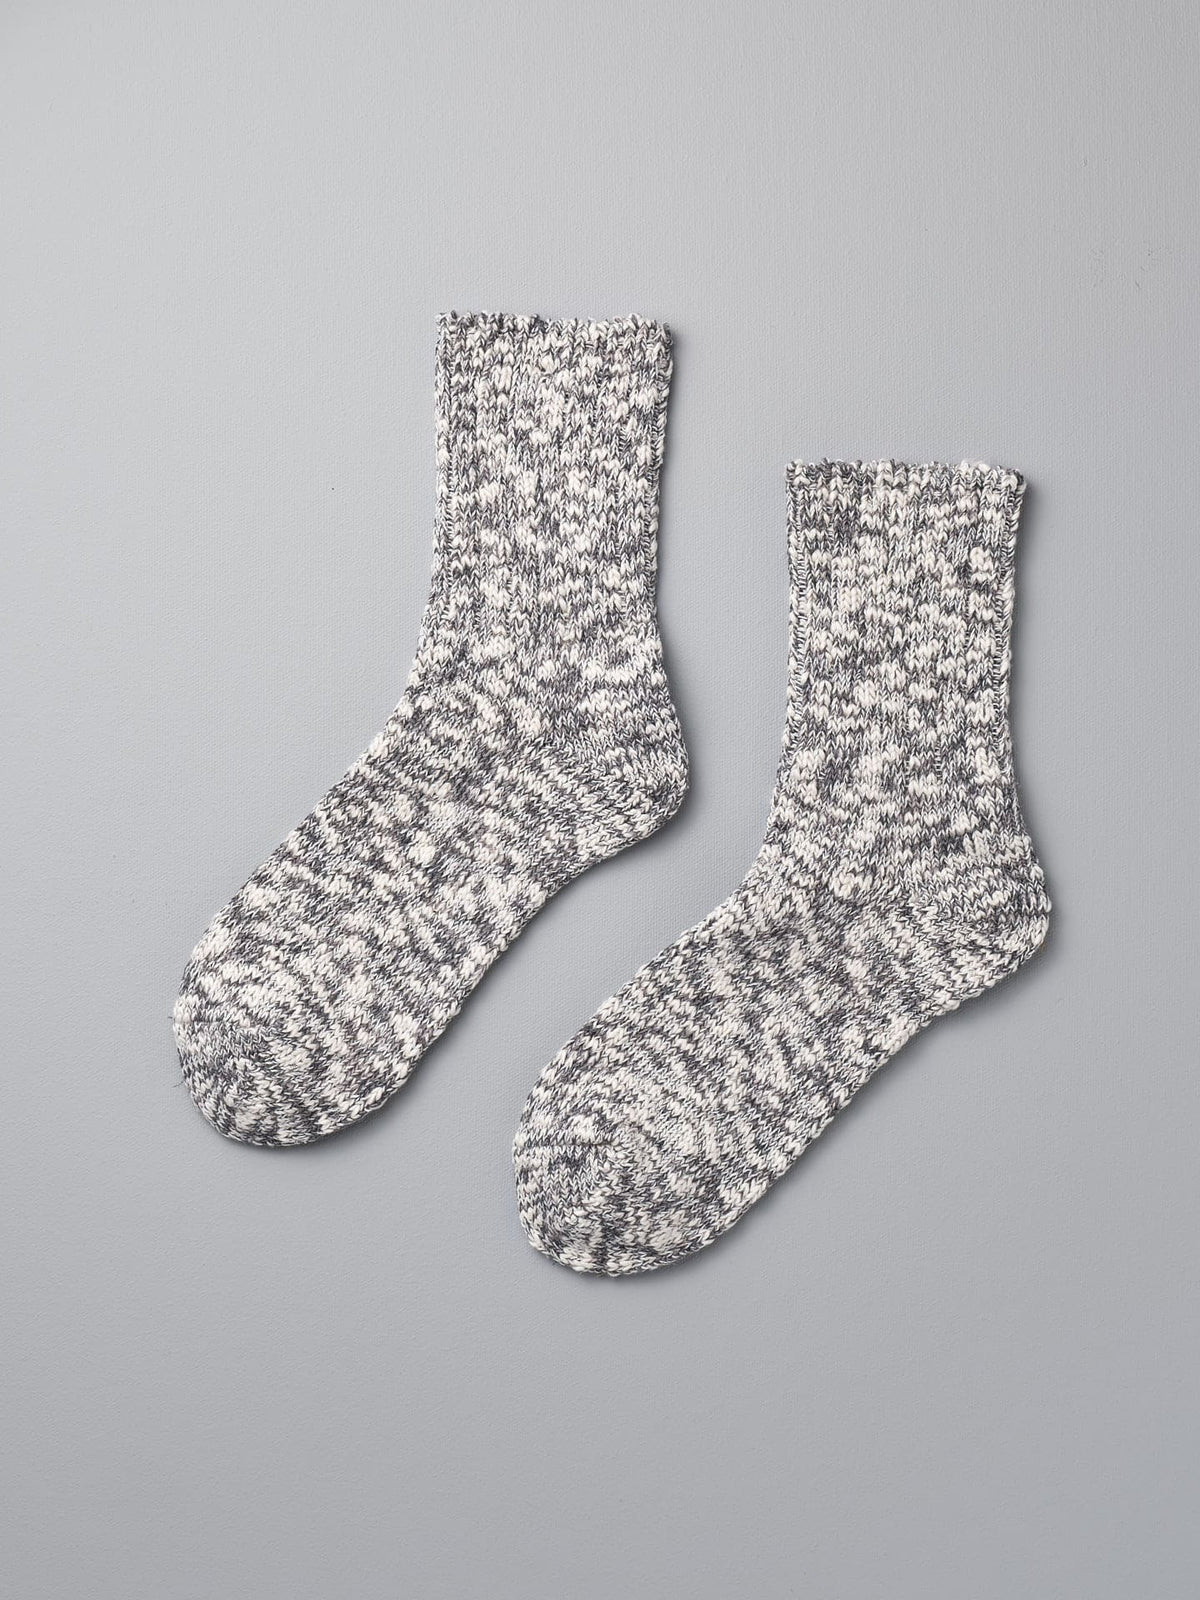 A pair of Mauna Kea Japanese Slub Socks – Grey on a grey background.